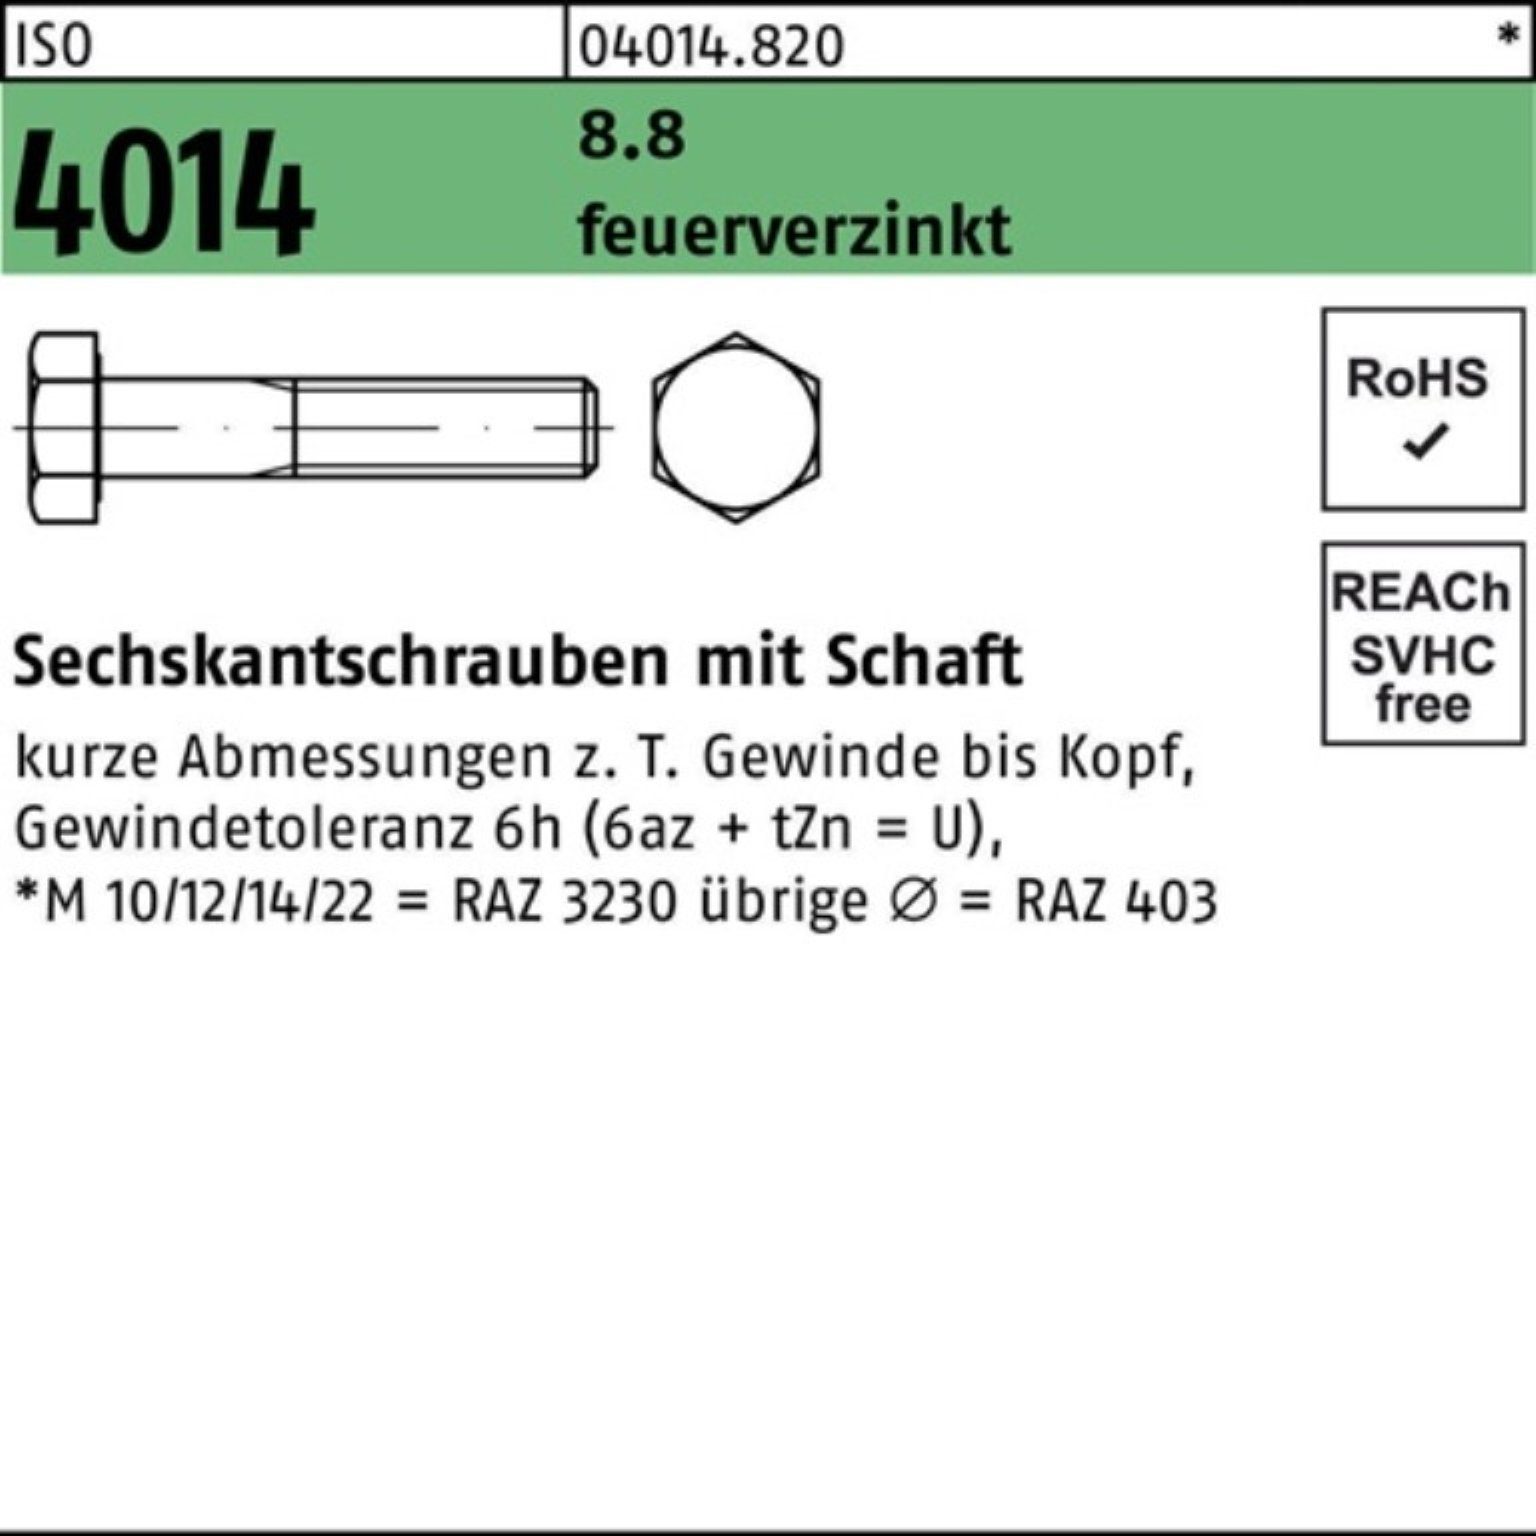 Bufab Sechskantschraube 100er Pack Sechskantschraube ISO 4014 Schaft M20x 300 8.8 feuerverz. 1